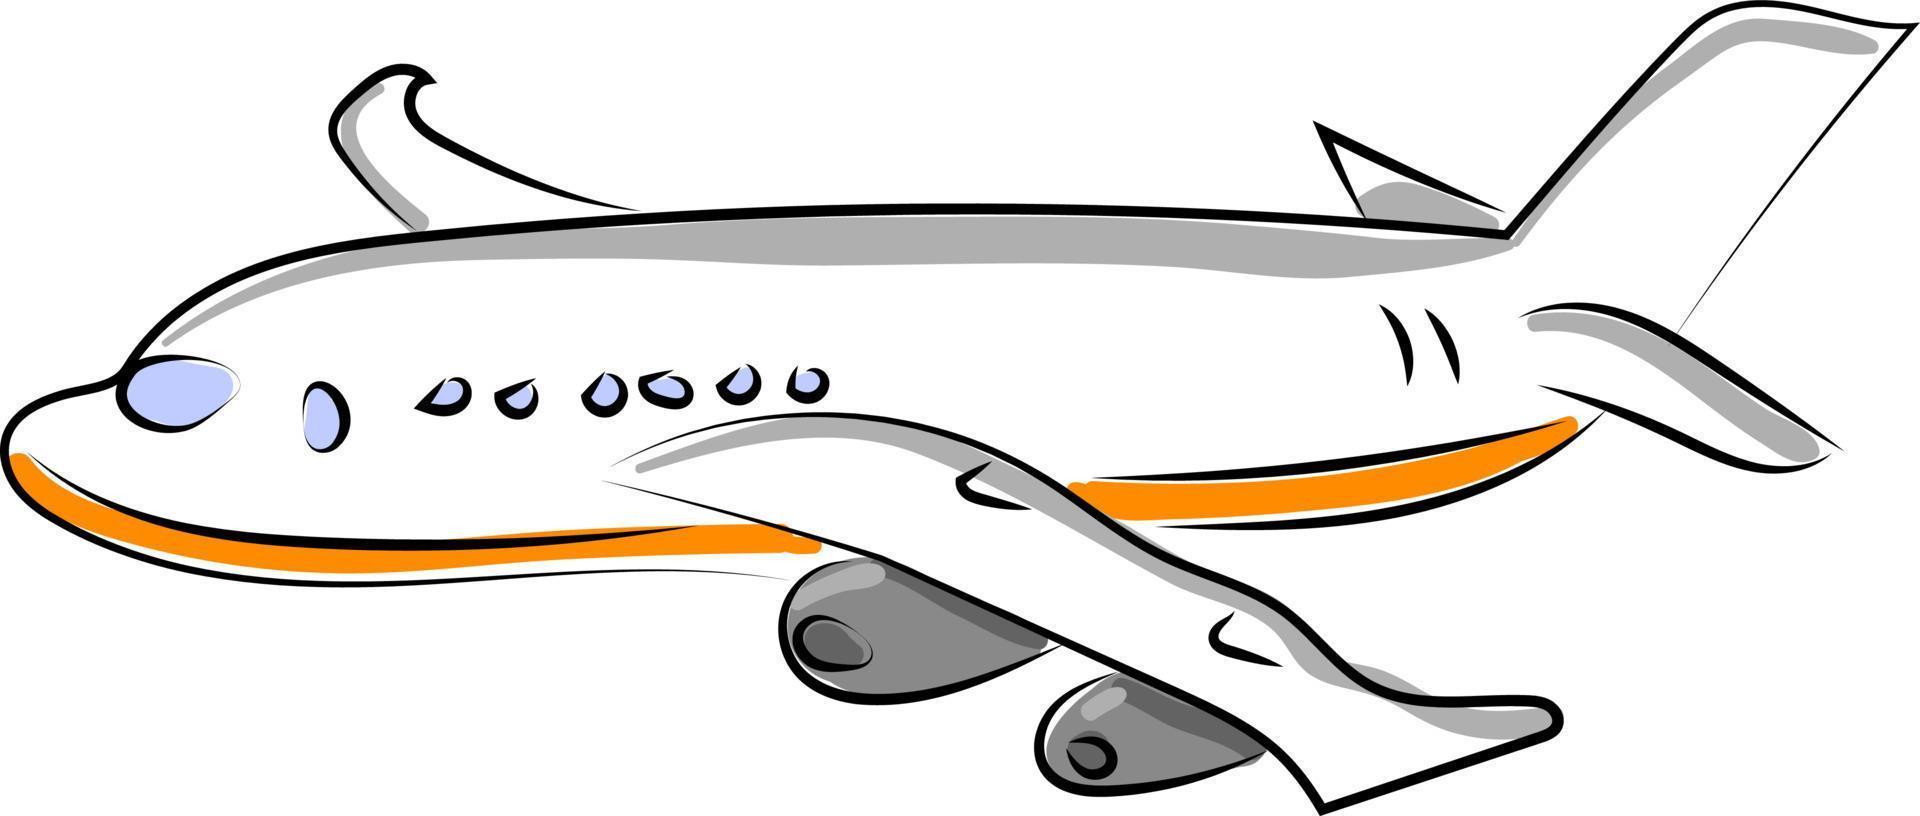 grande aeronave, ilustração, vetor em fundo branco.